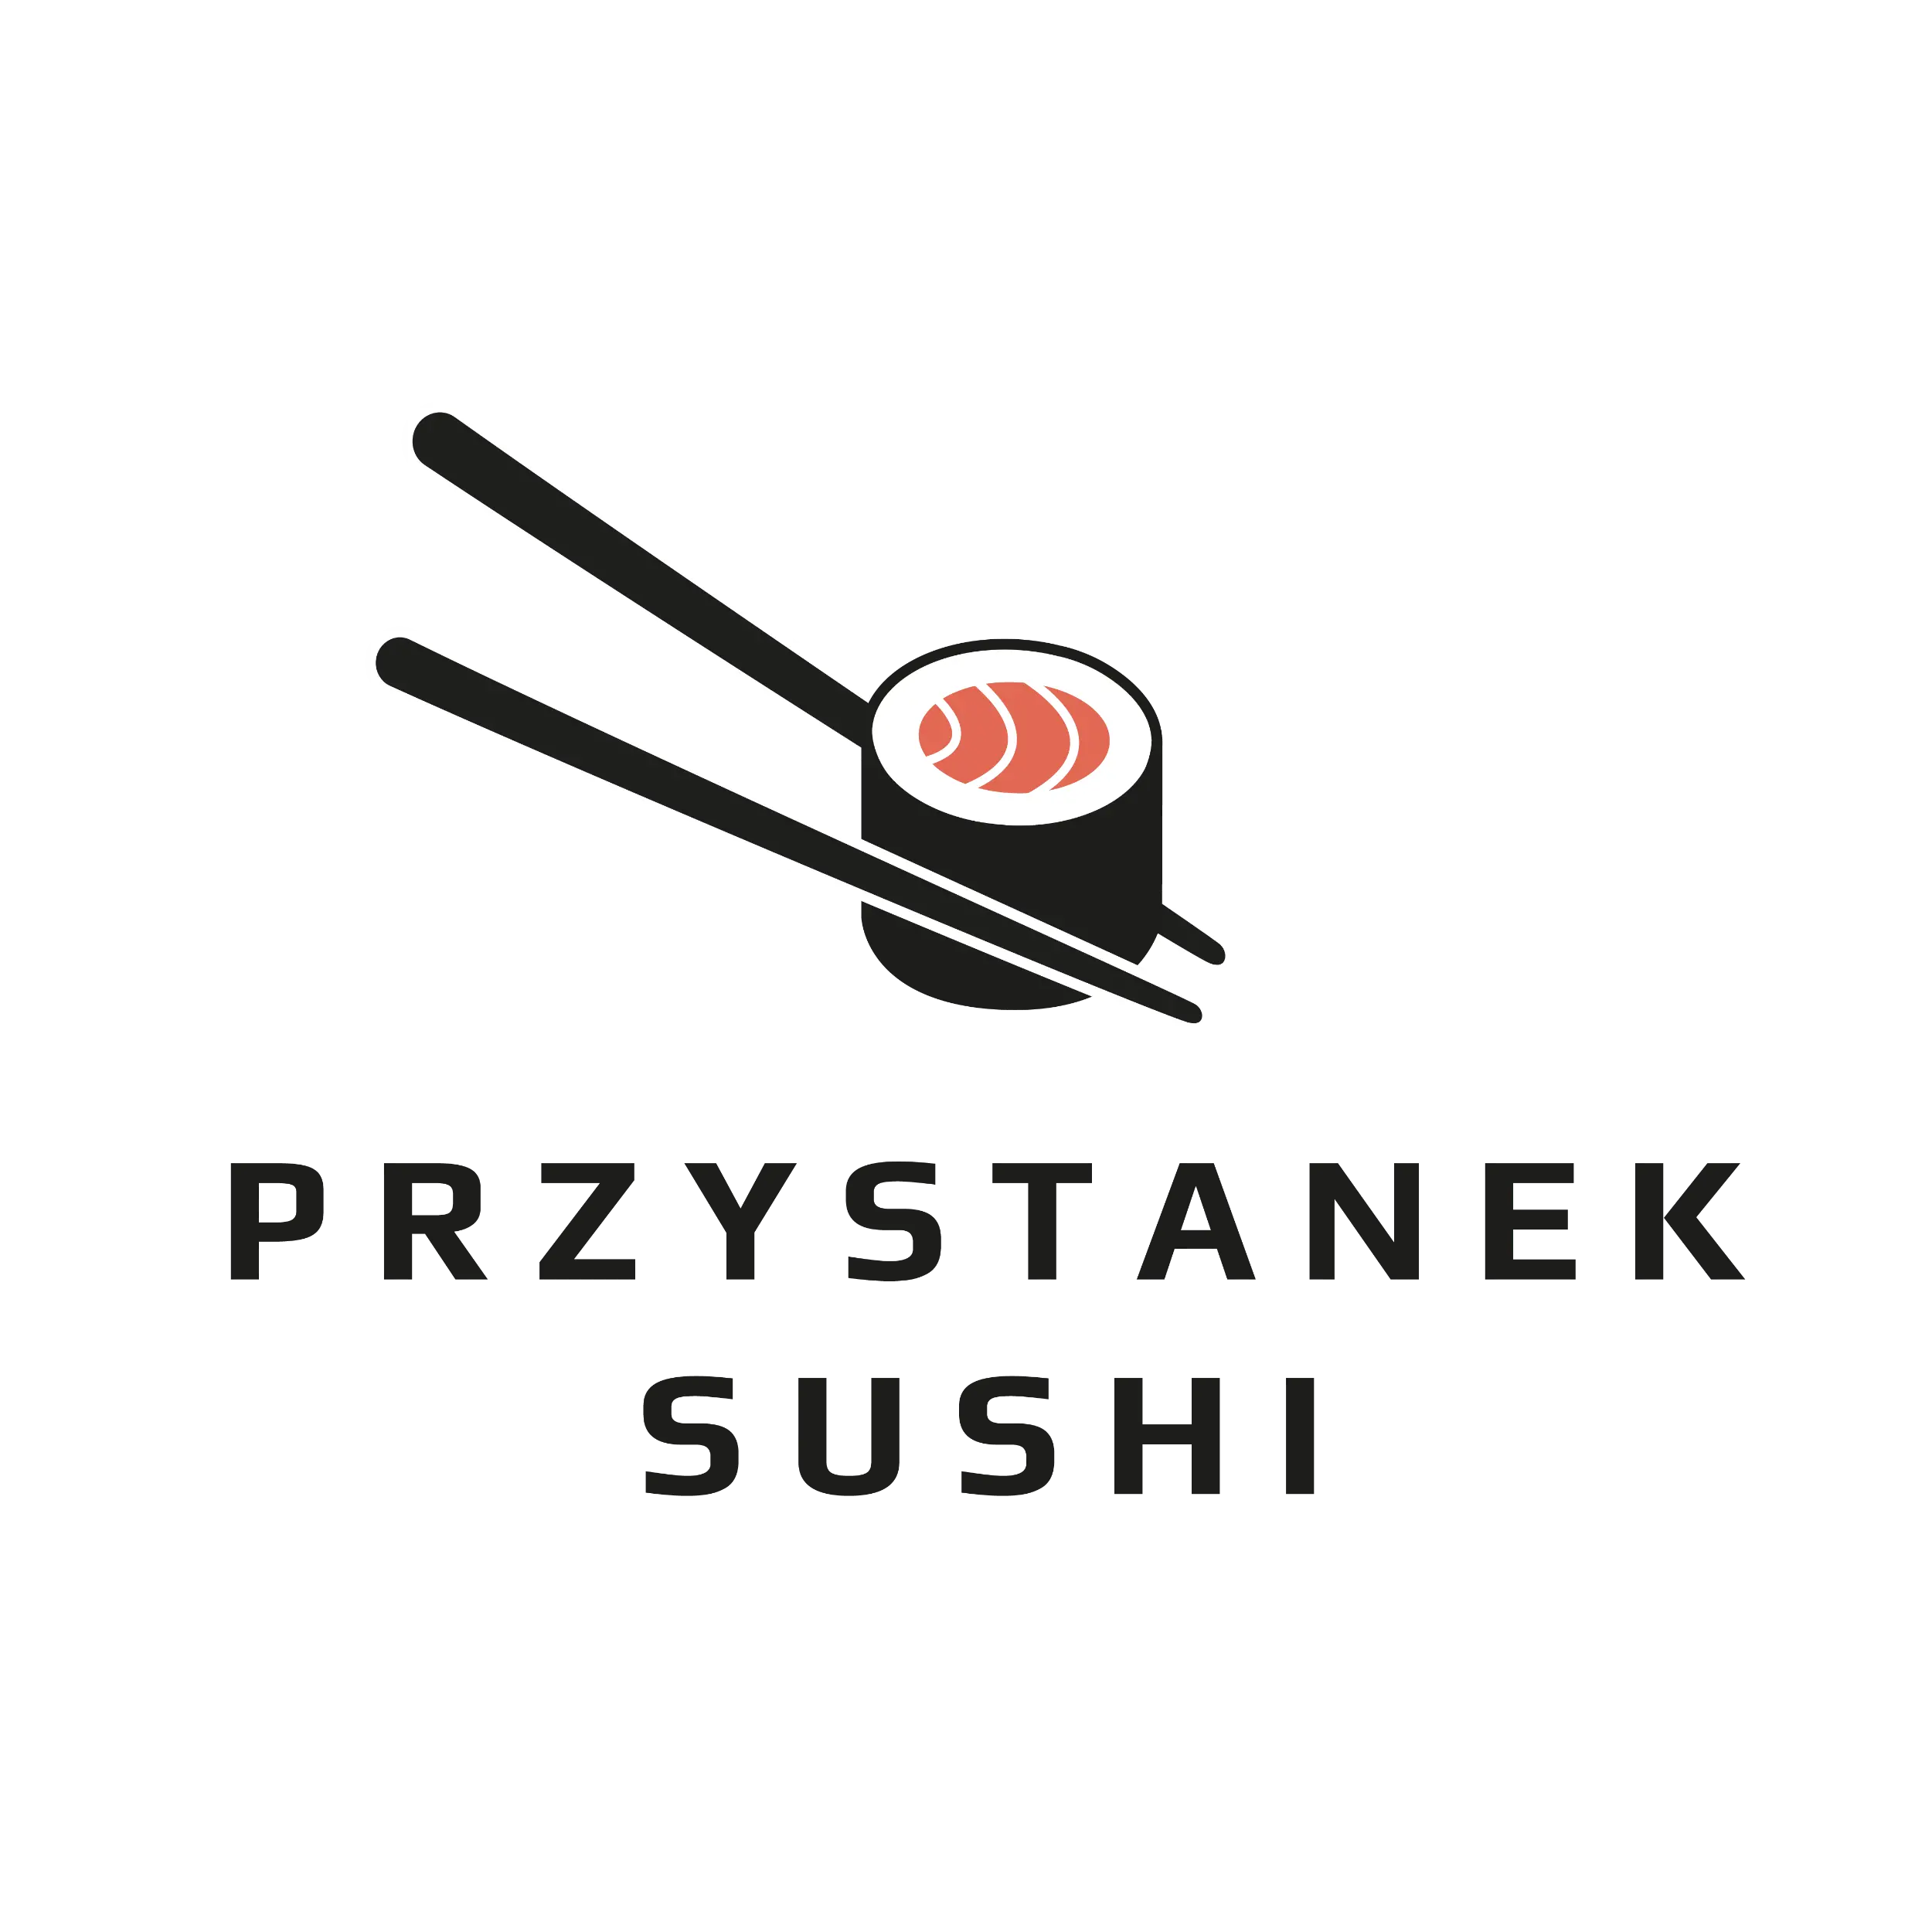 Przystanek Sushi